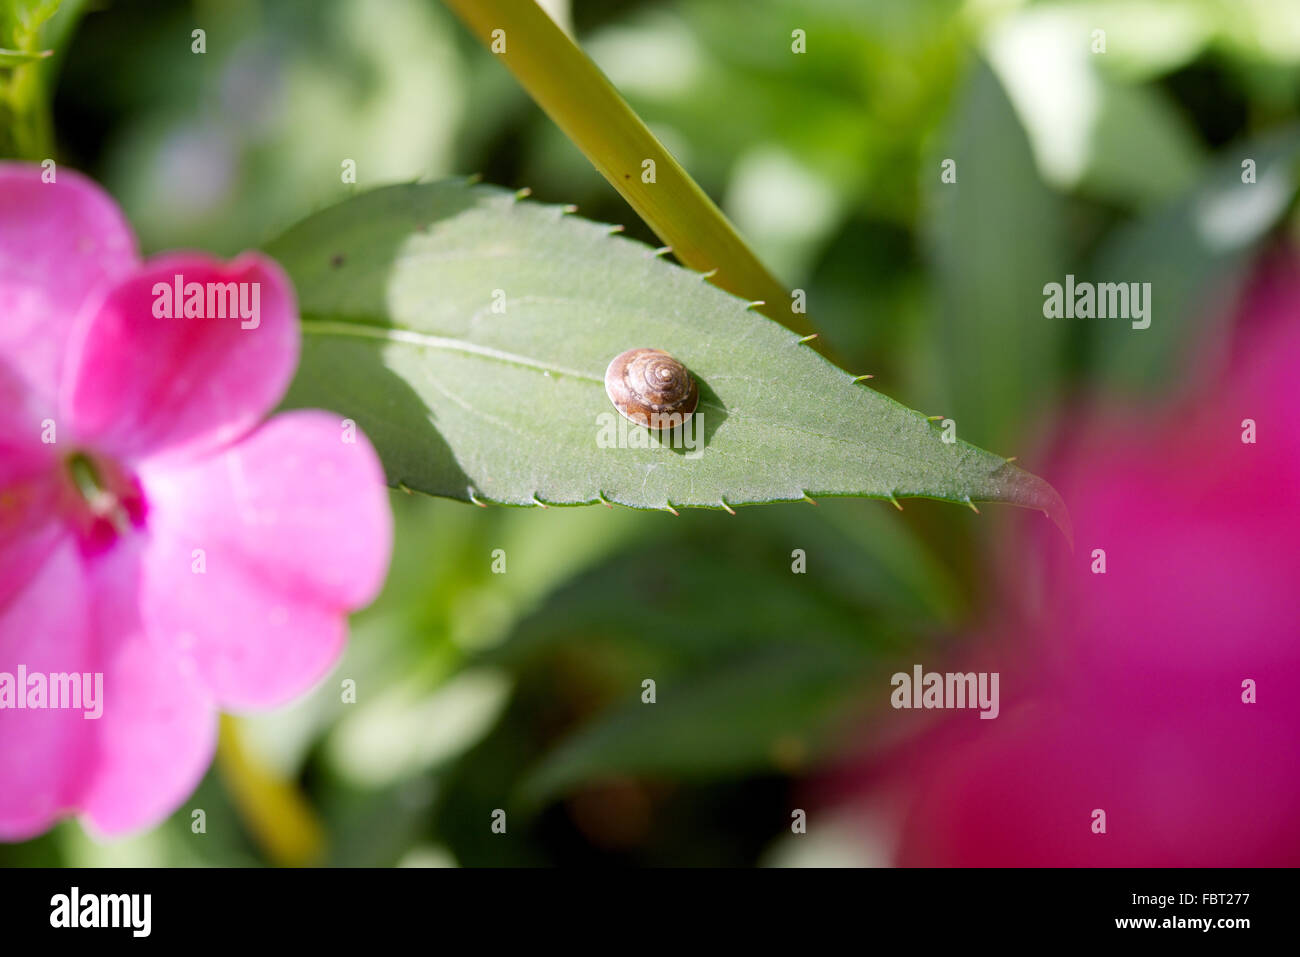 Tiny snail on leaf Stock Photo